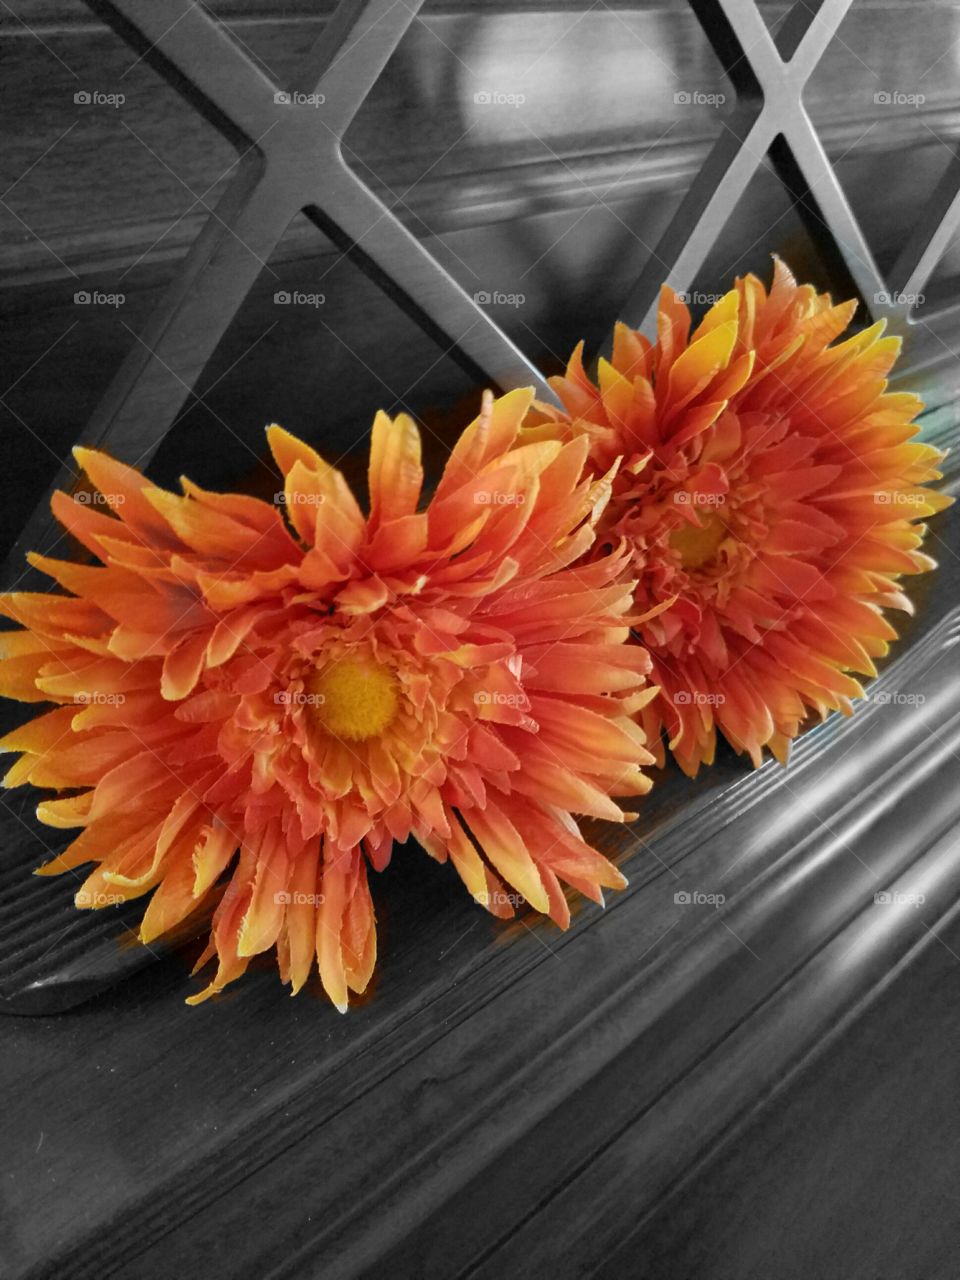 Orange Flowers on Piano